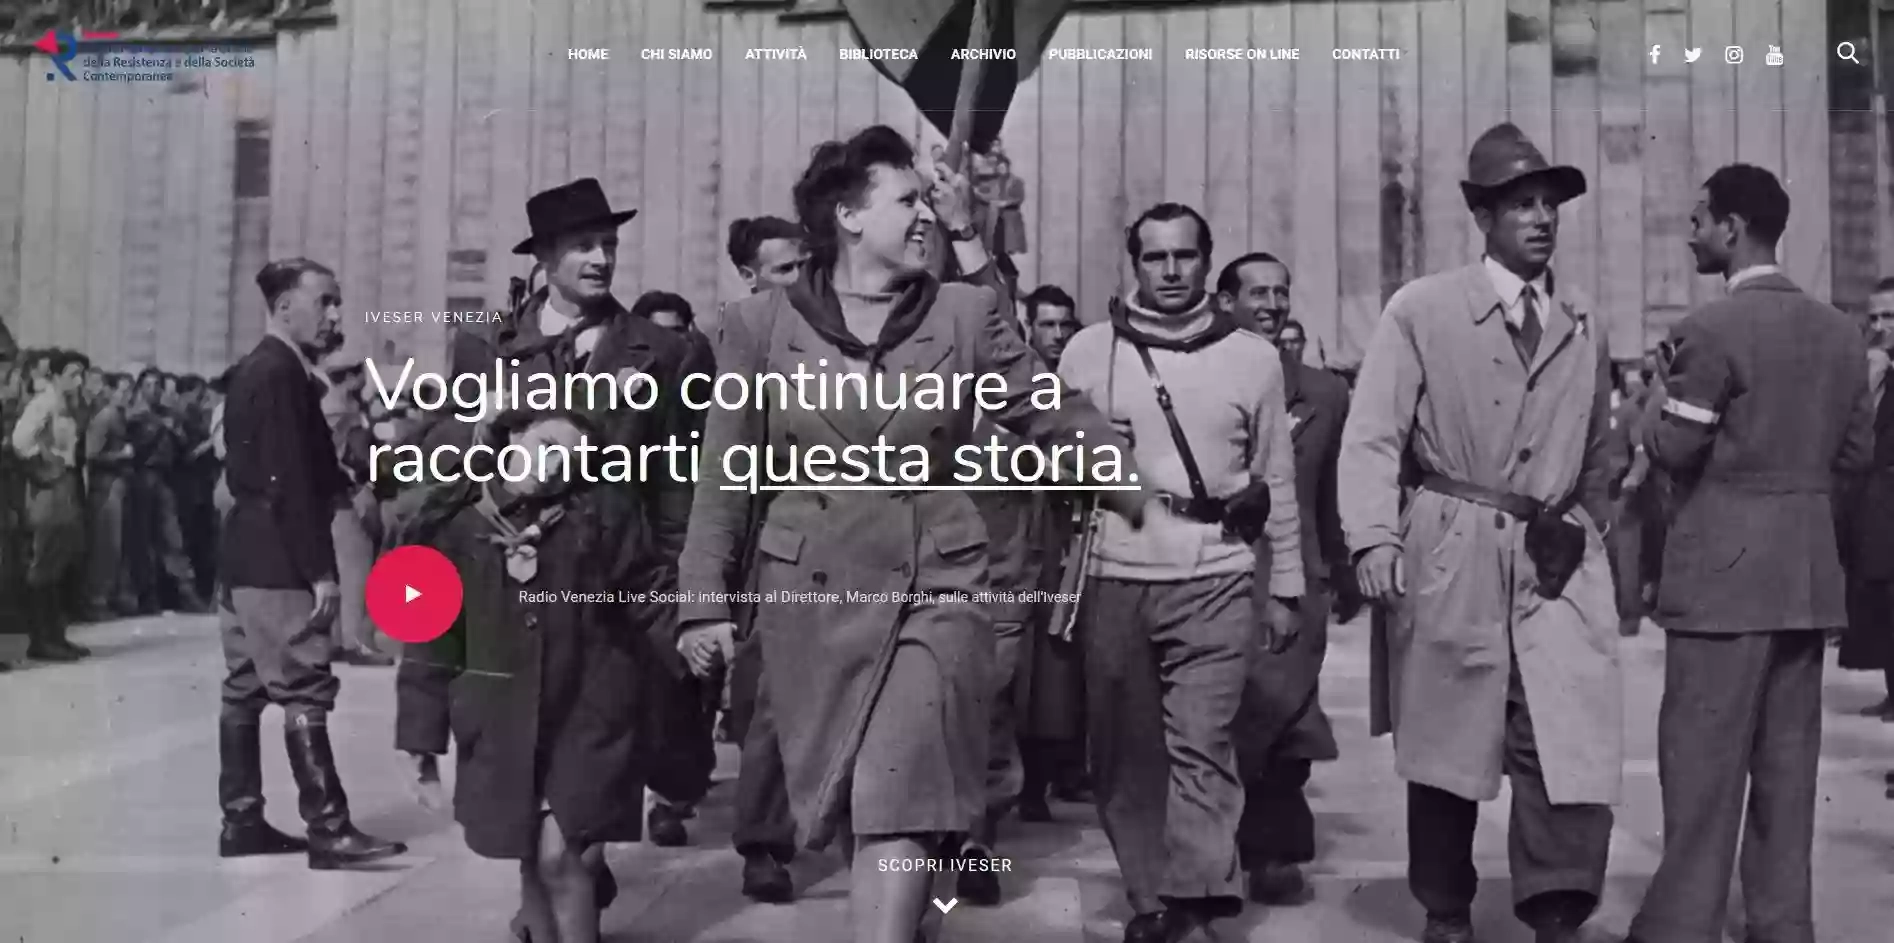 Istituto veneziano per la storia della Resistenza e della società contemporanea